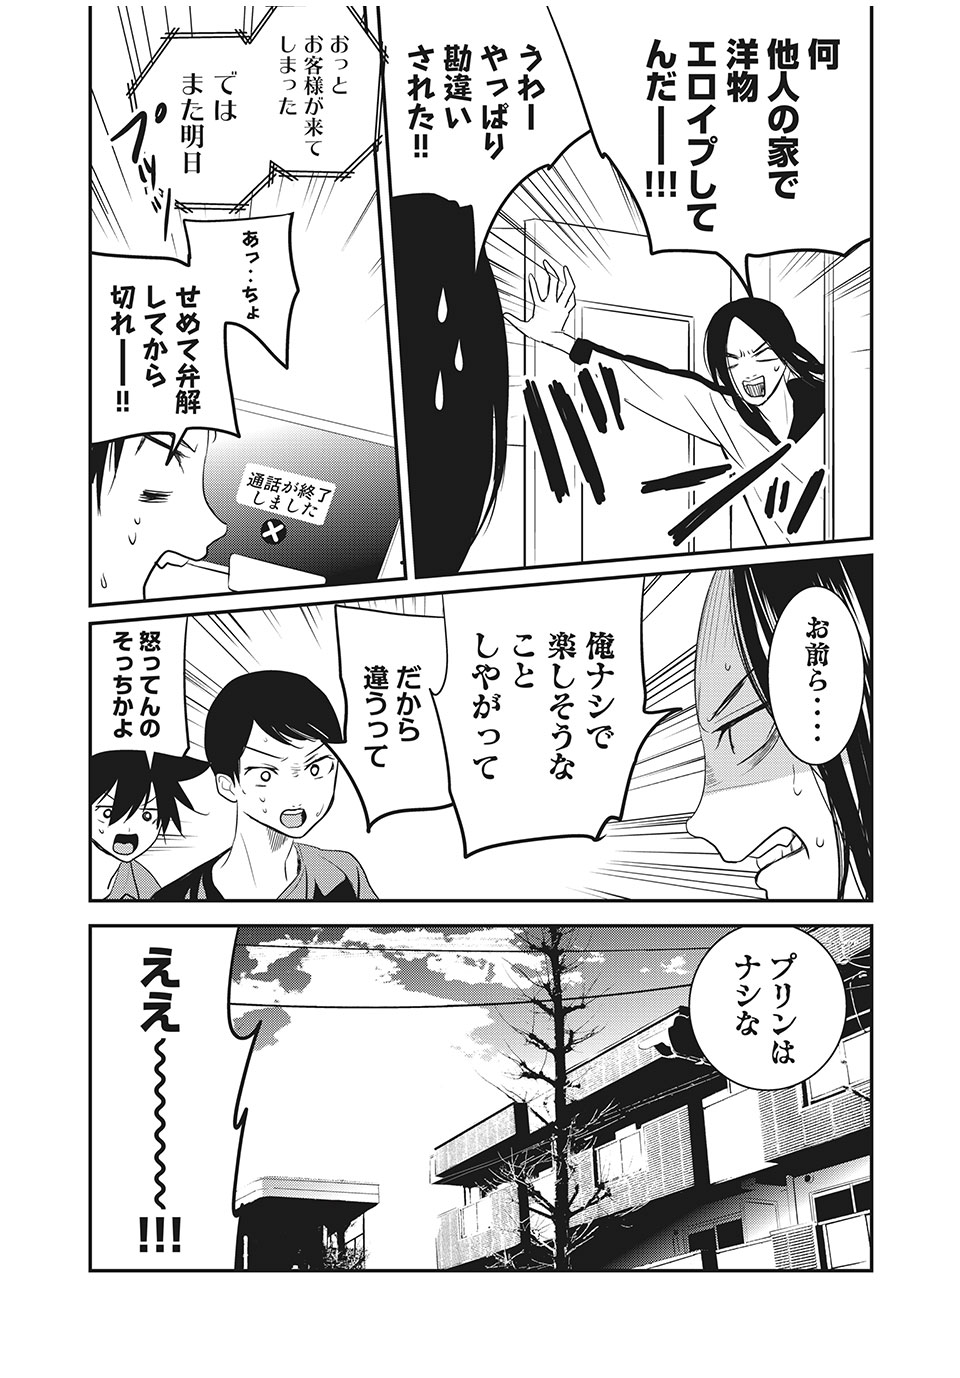 Eigo ×× Sensei - Chapter 19 - Page 9